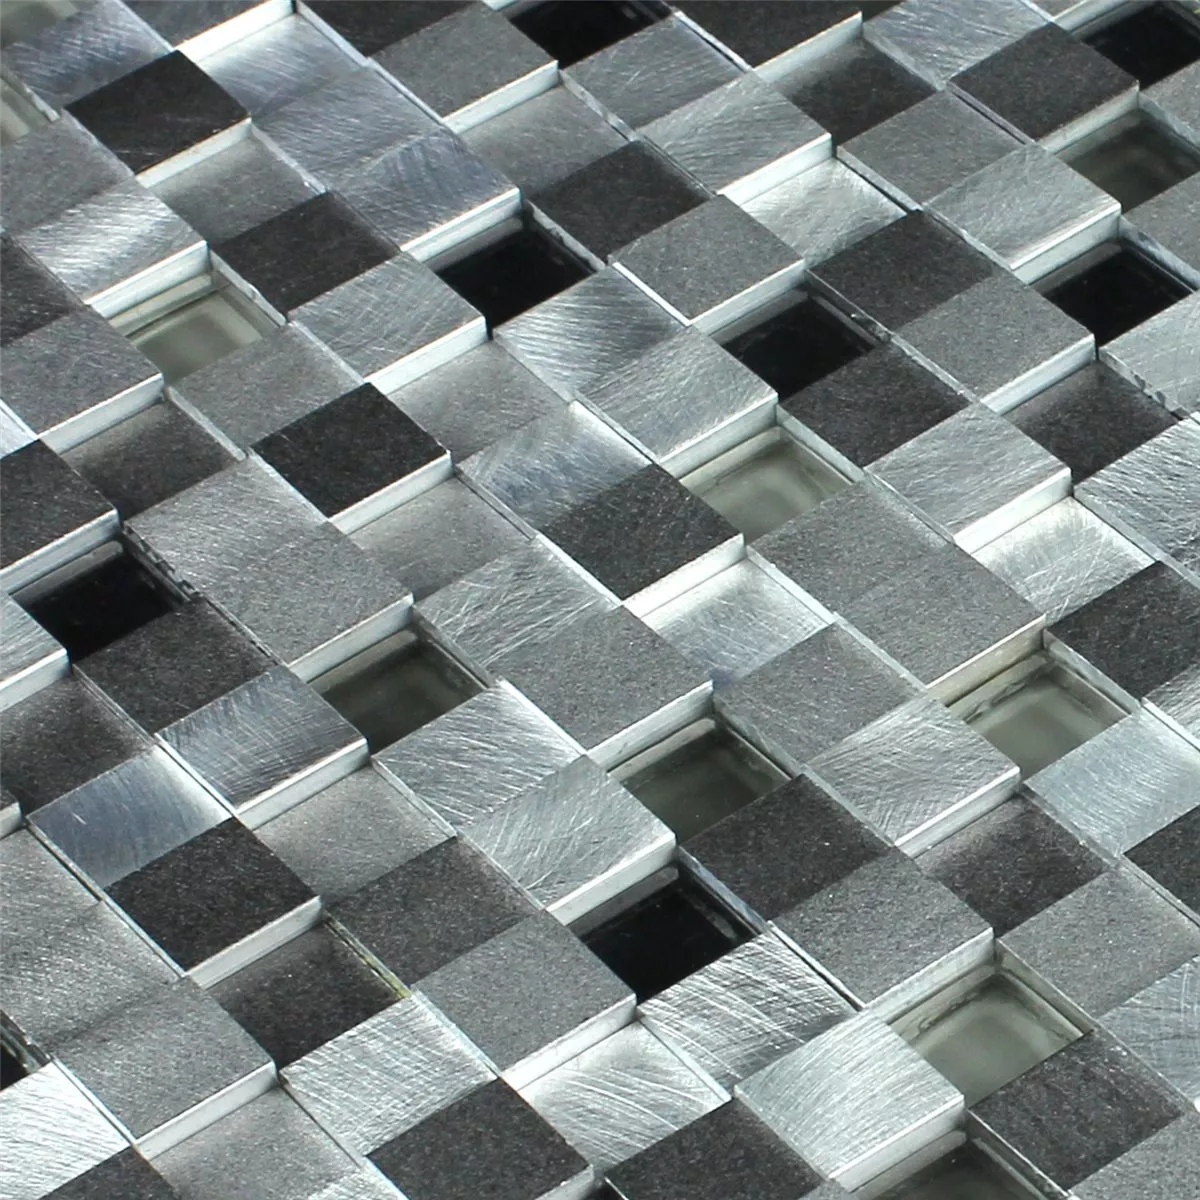 Muster von Mosaikfliesen Aluminium Glas D Design Black Mix